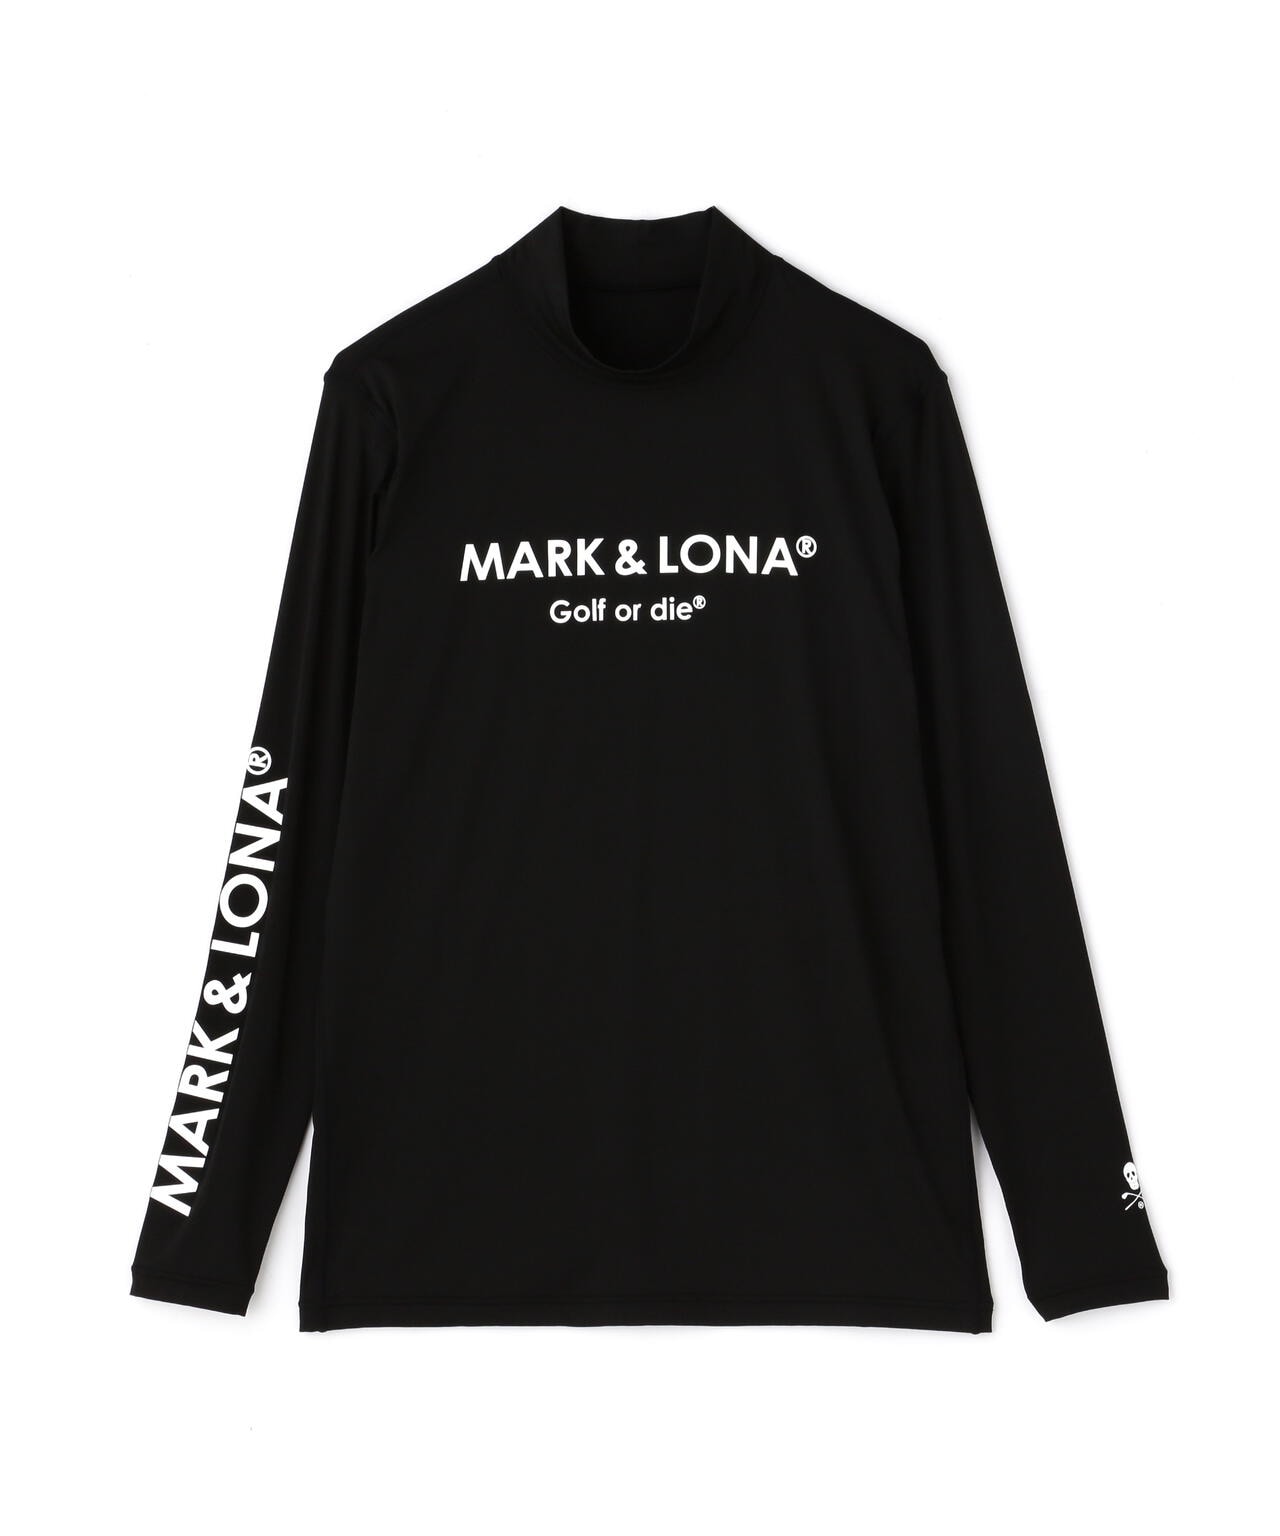 注目ショップ・ブランドのギフト マーク&ロナ MARK&LONA ウエア(男性用